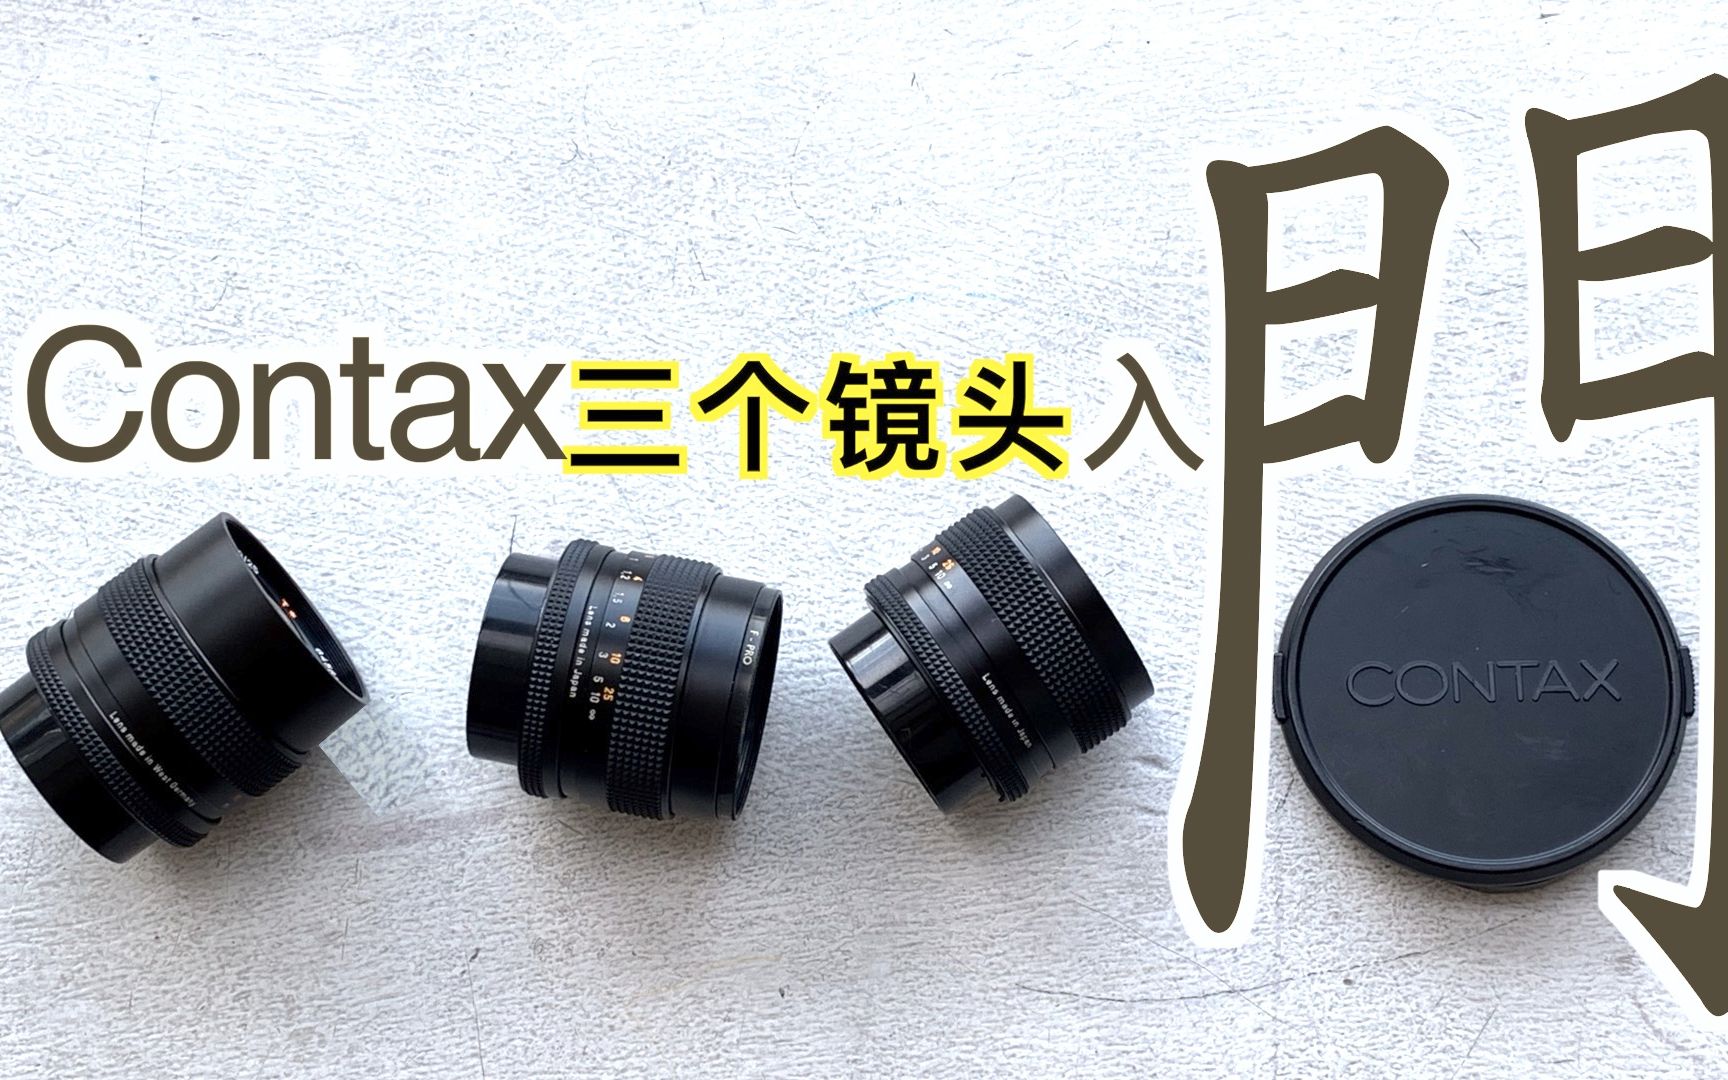 入门Contax的三个镜头，平价配置广角、中焦、长焦（康泰时系列）老镜头 